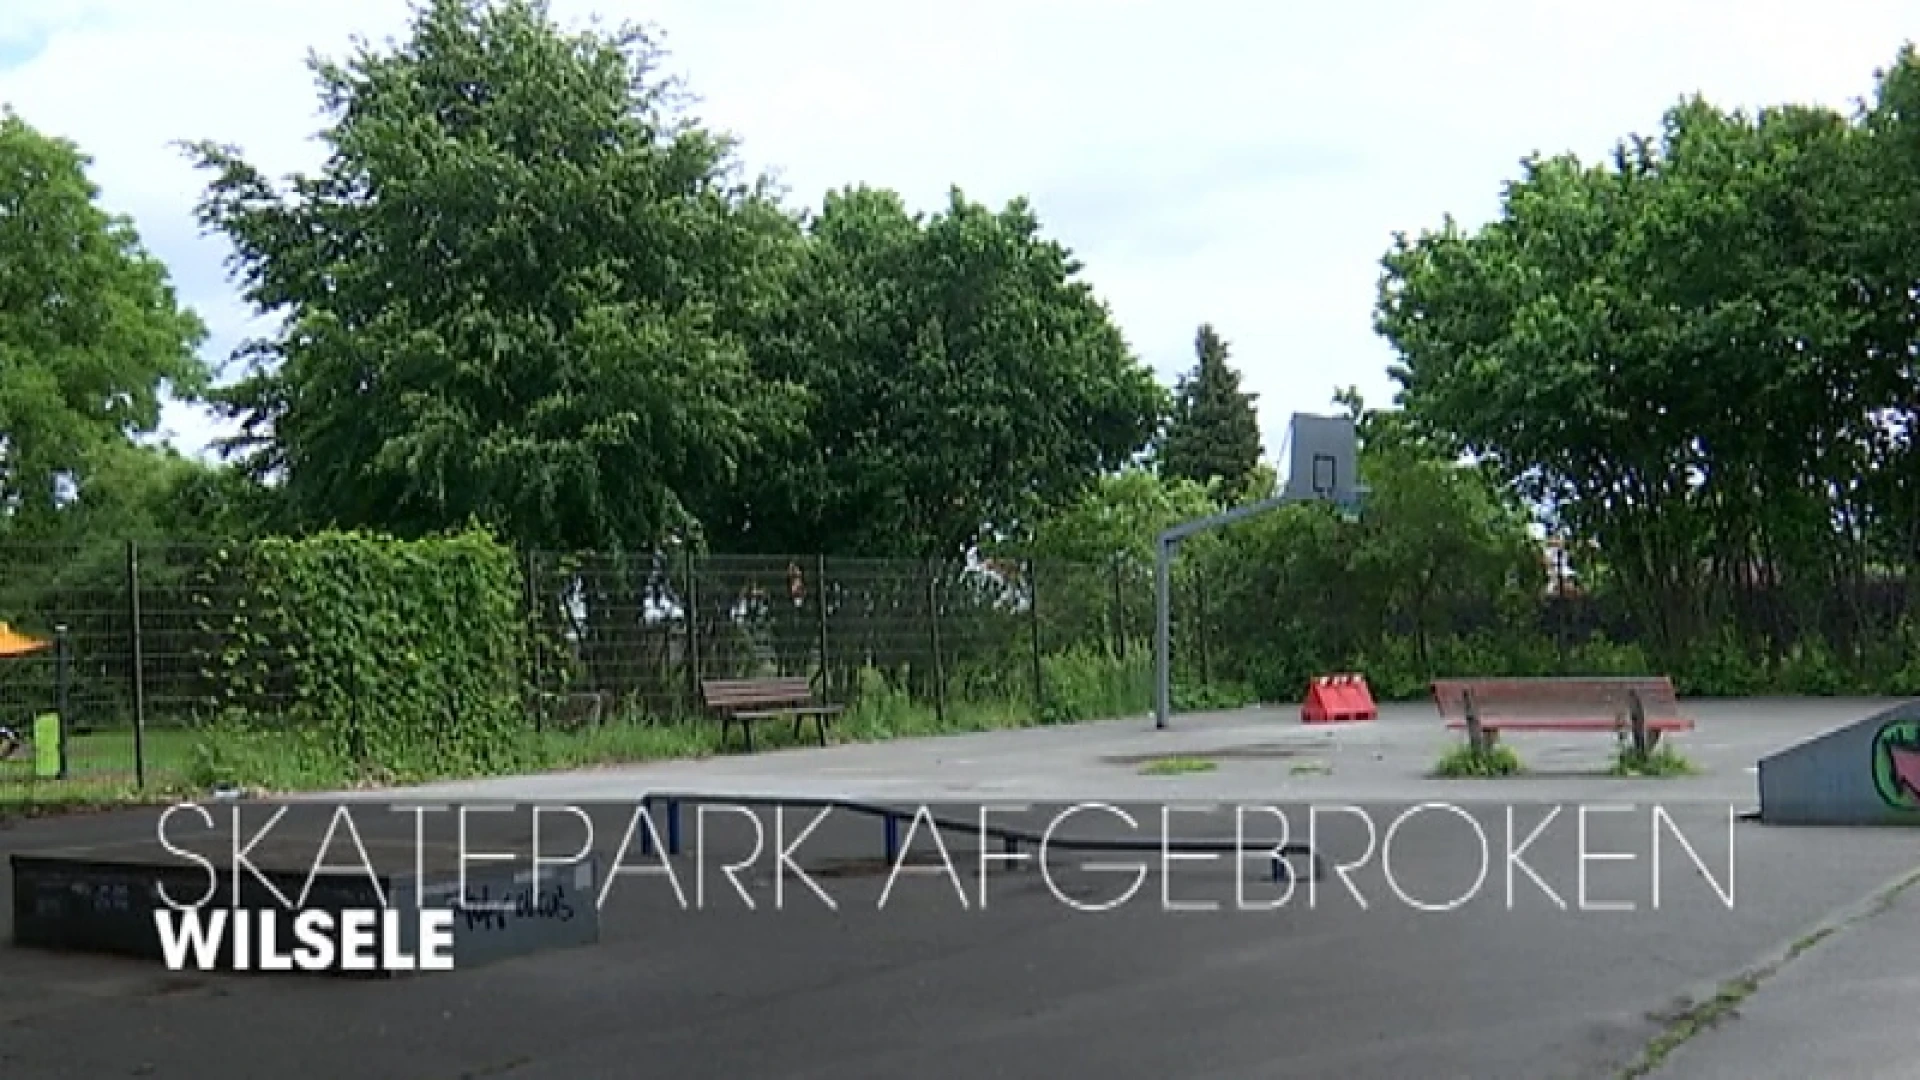 Skatepark 't Fort in Wilsele is verouderd en wordt afgebroken